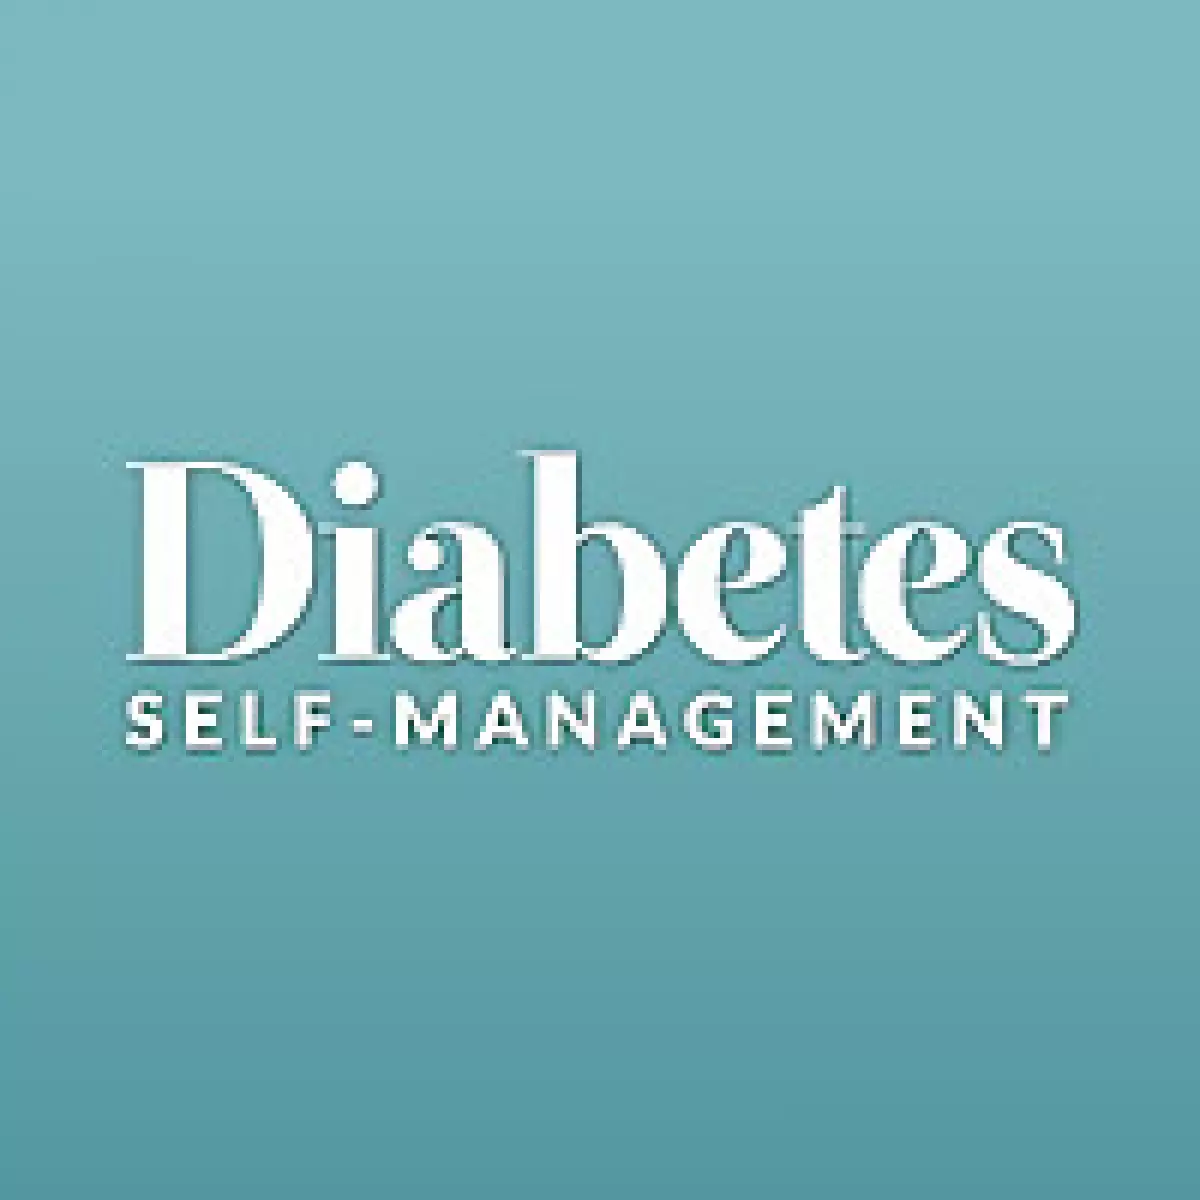 Diabetes Self Management